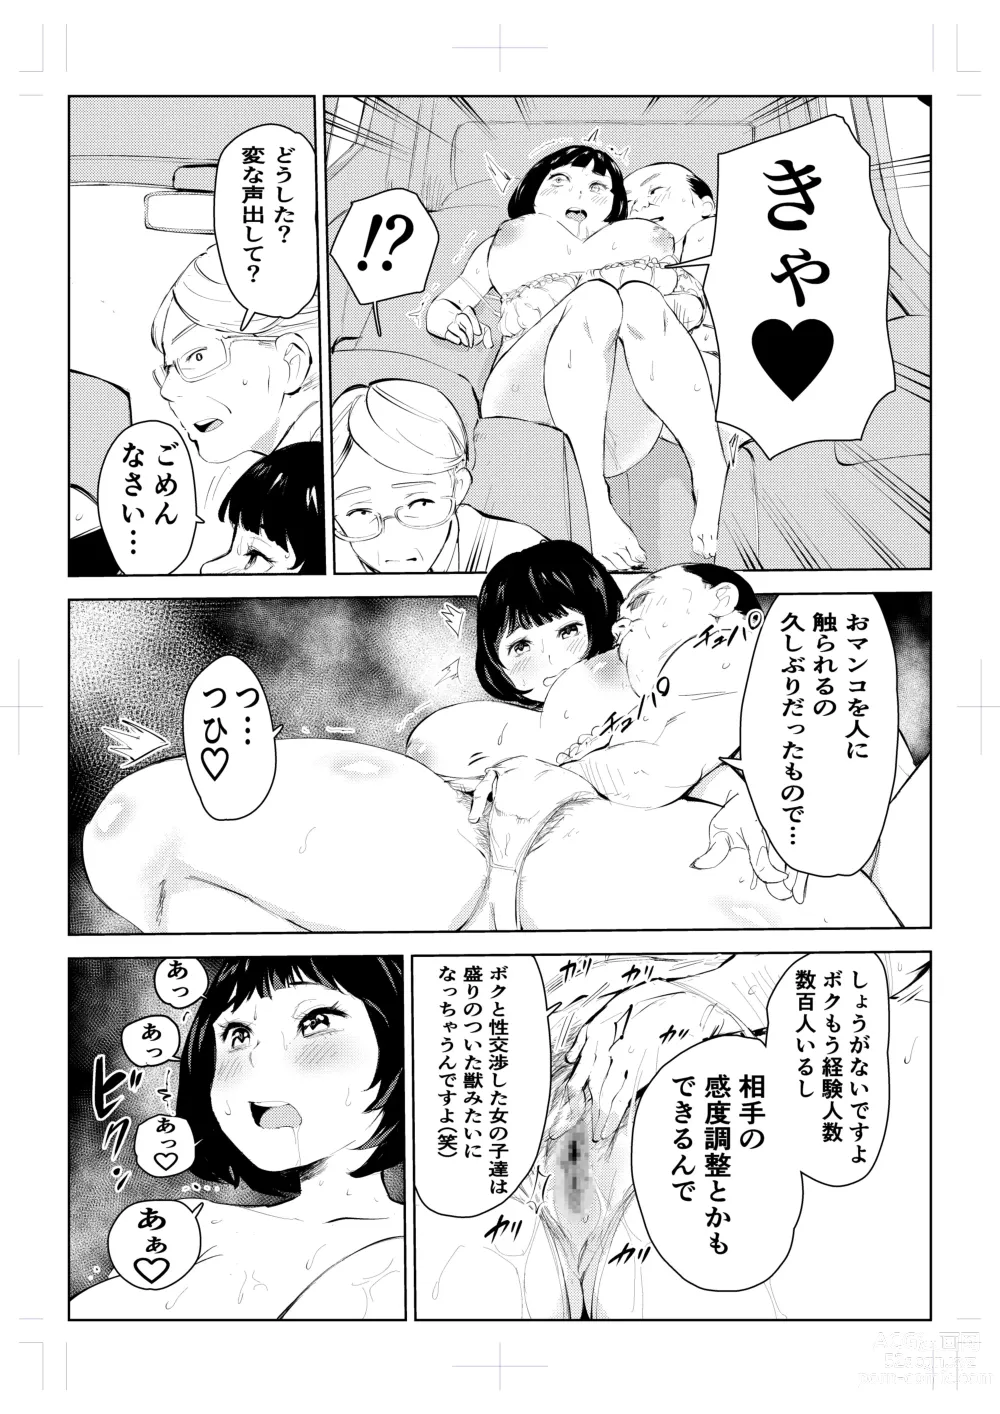 Page 20 of doujinshi 40-sai no Mahoutsukai 4